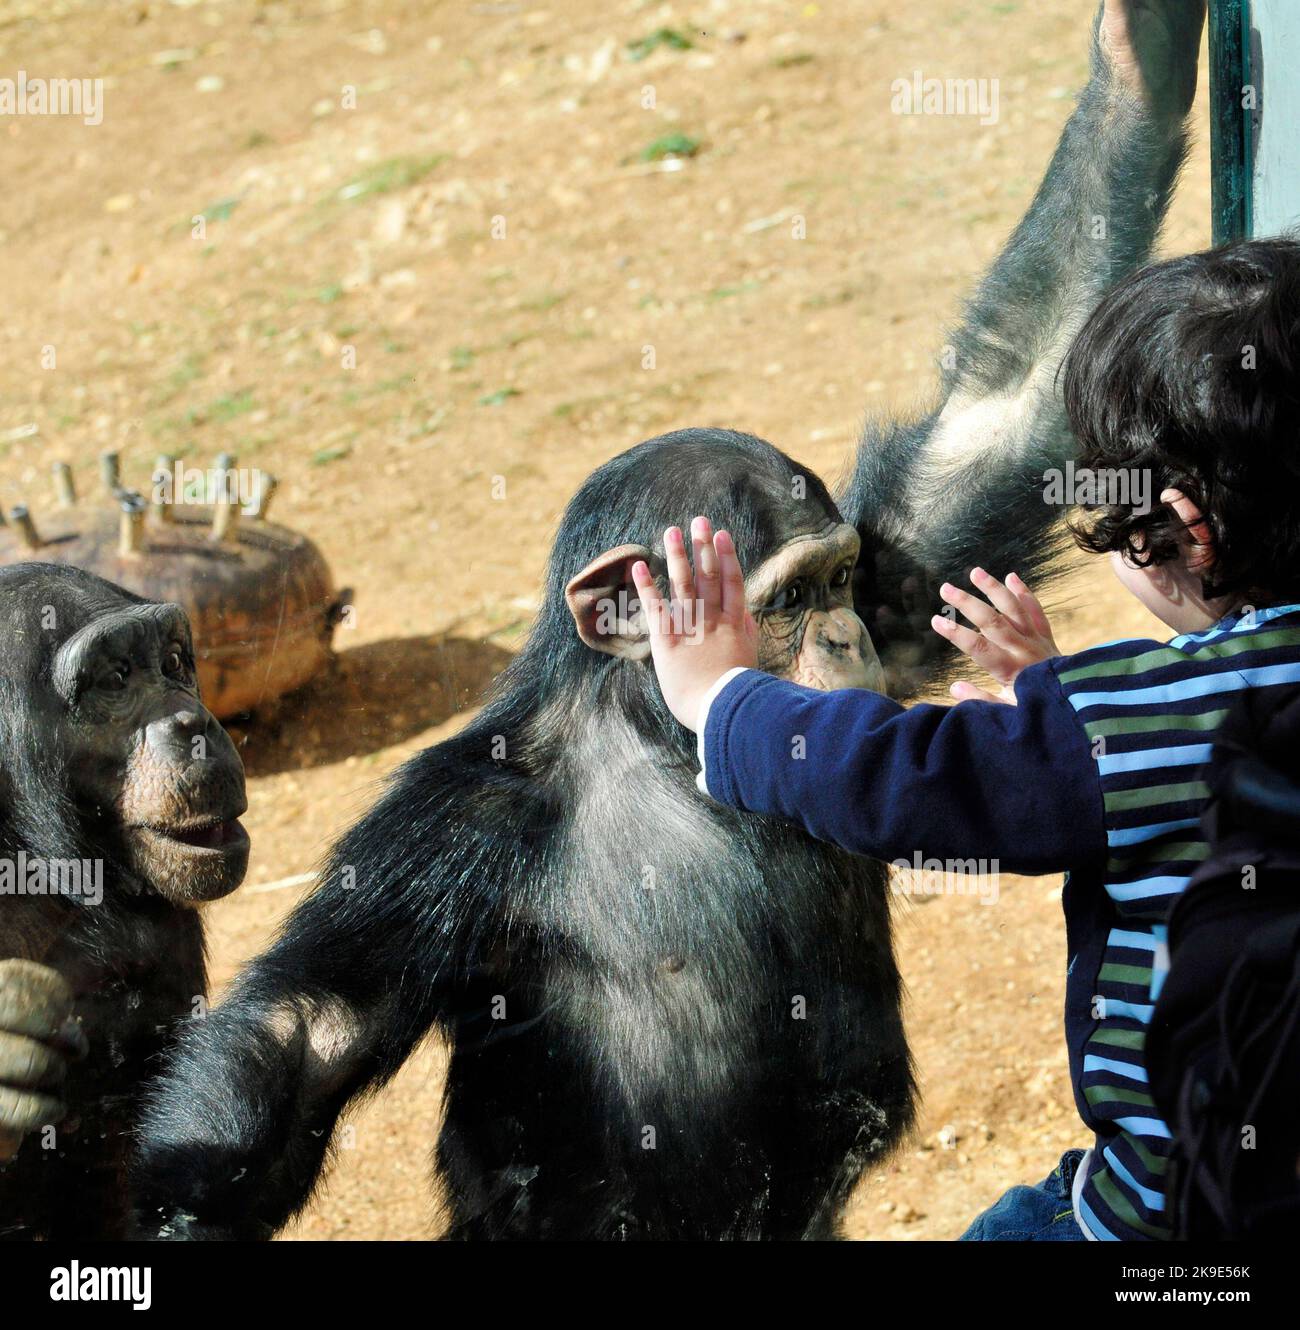 Un niño y un chimpancé mirando e interactuando entre sí. Foto de stock